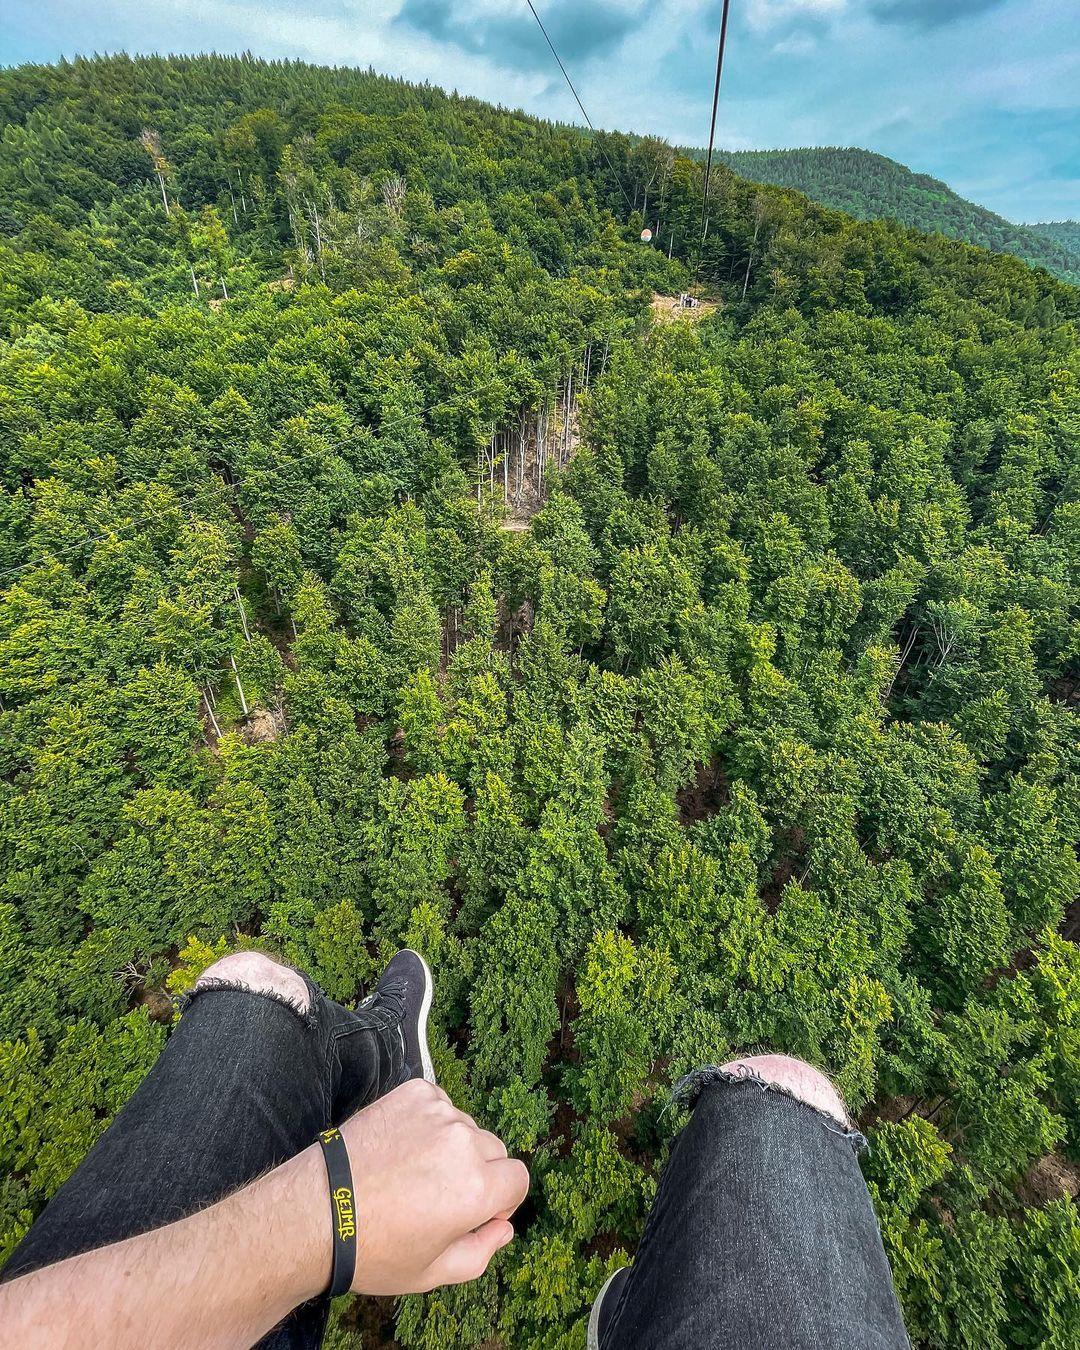 150m nad zemí a 2,2km dlouhá zipline 🤠🔥
Husté co? 😀 šel/šla bys na to taky? 🤔
#gejmr #zipline